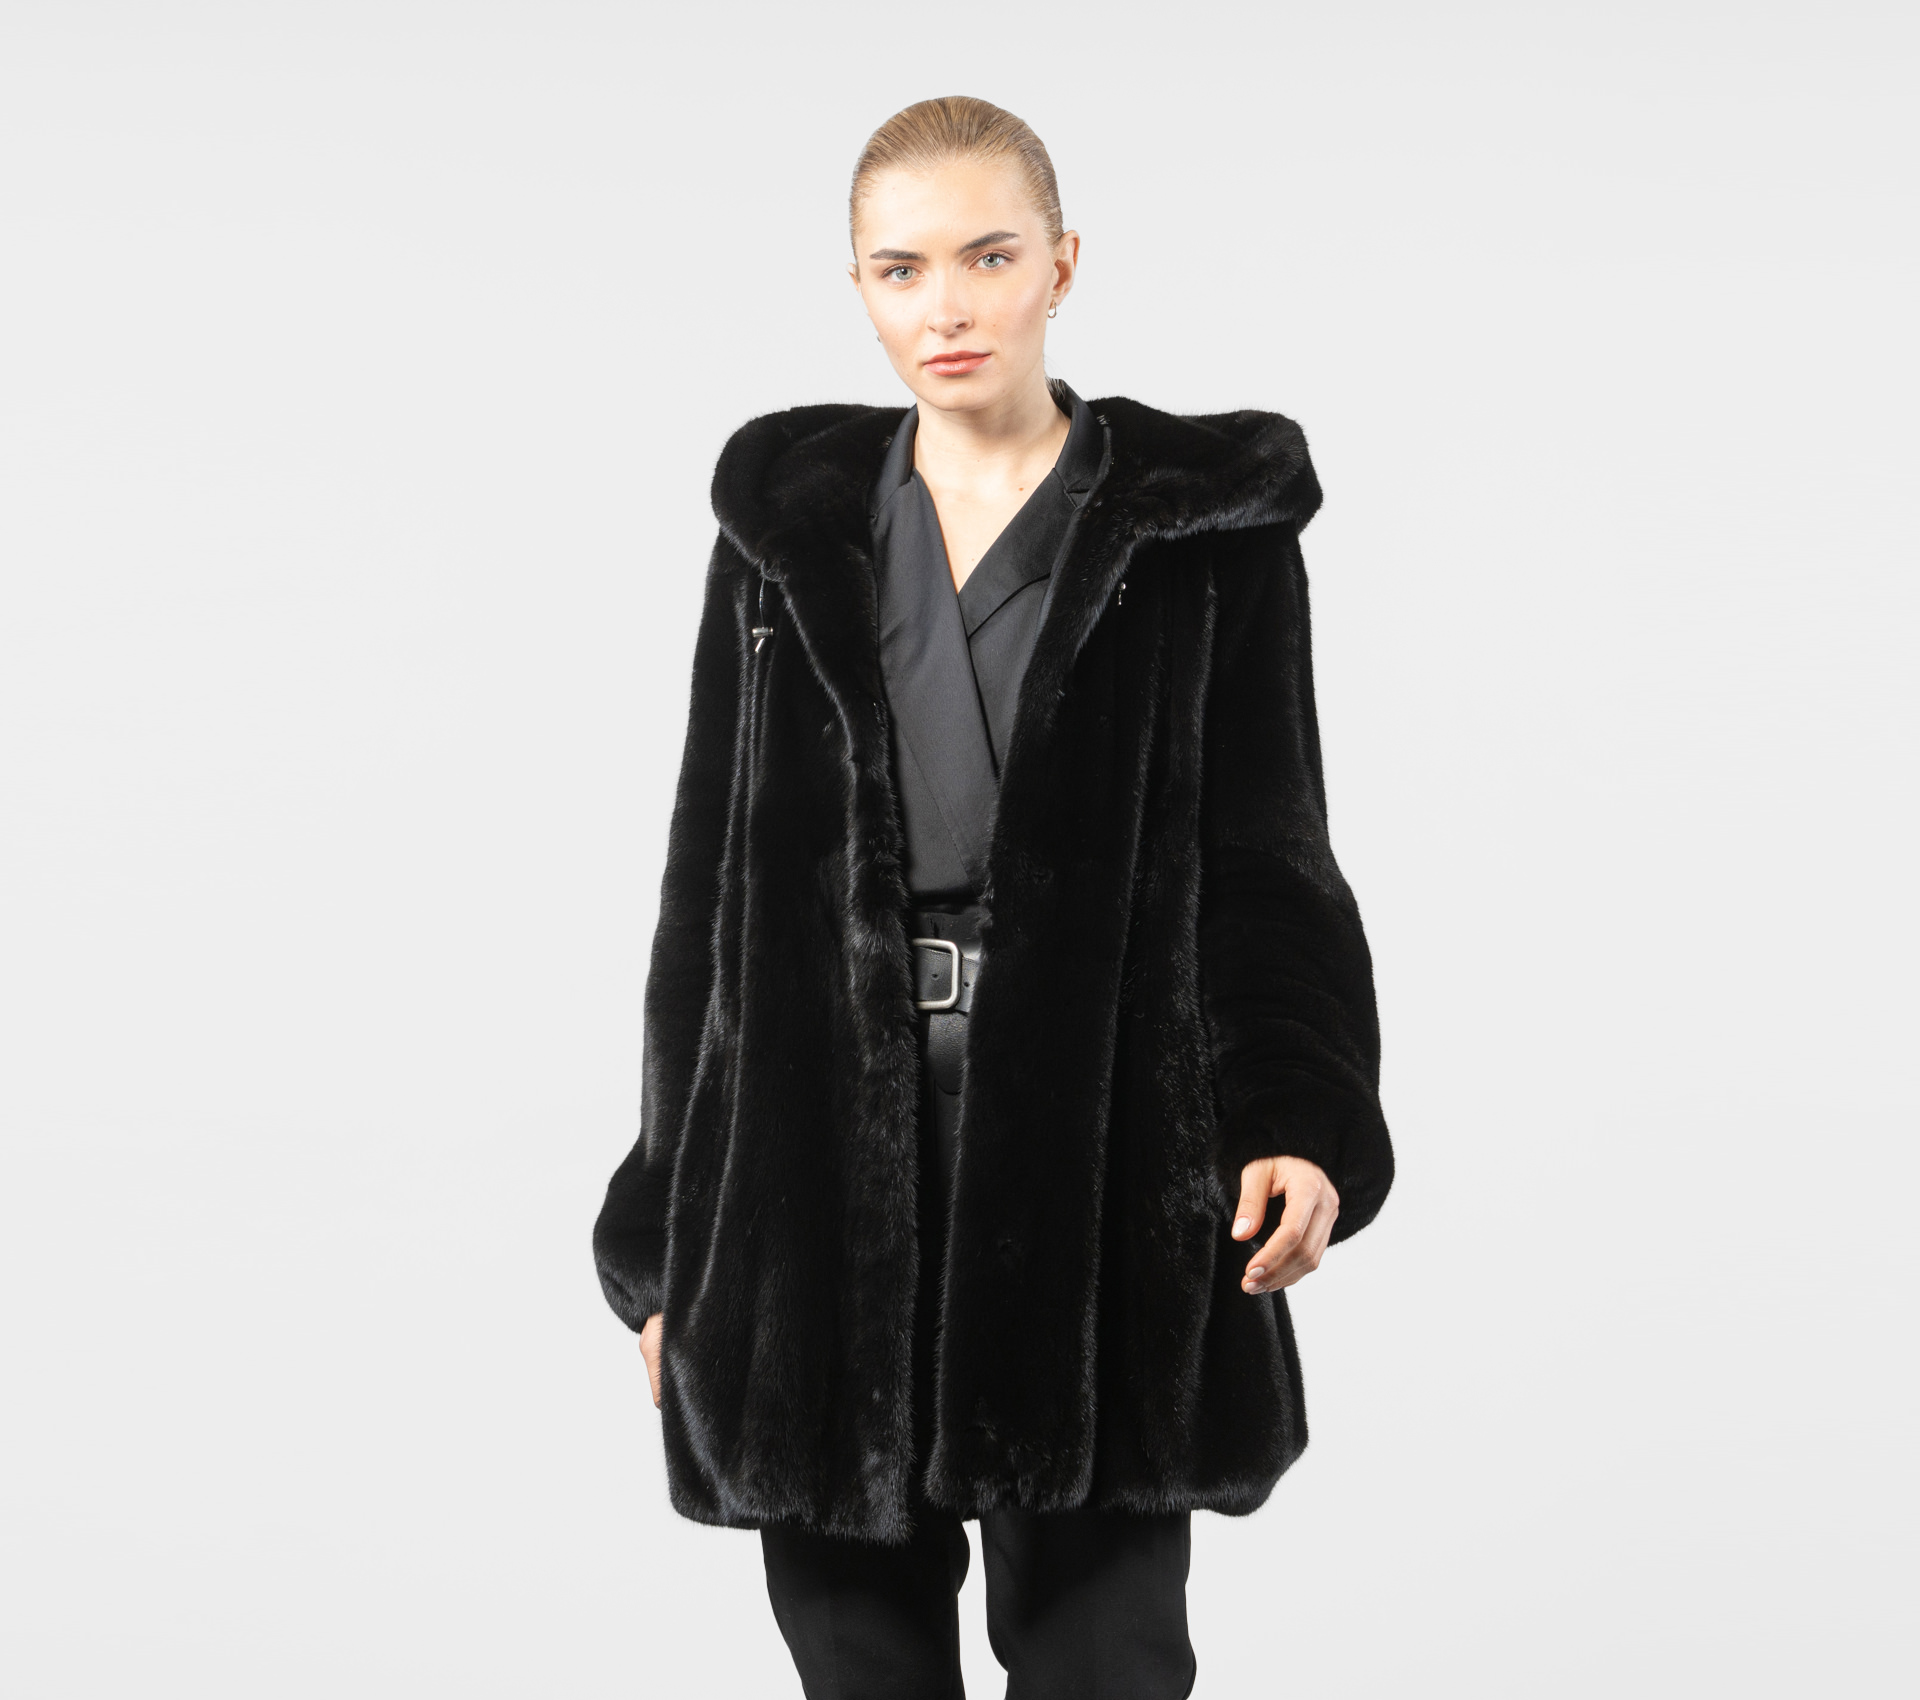 Black Hooded Oversized Mink Fur Jacket - 100% Real Fur